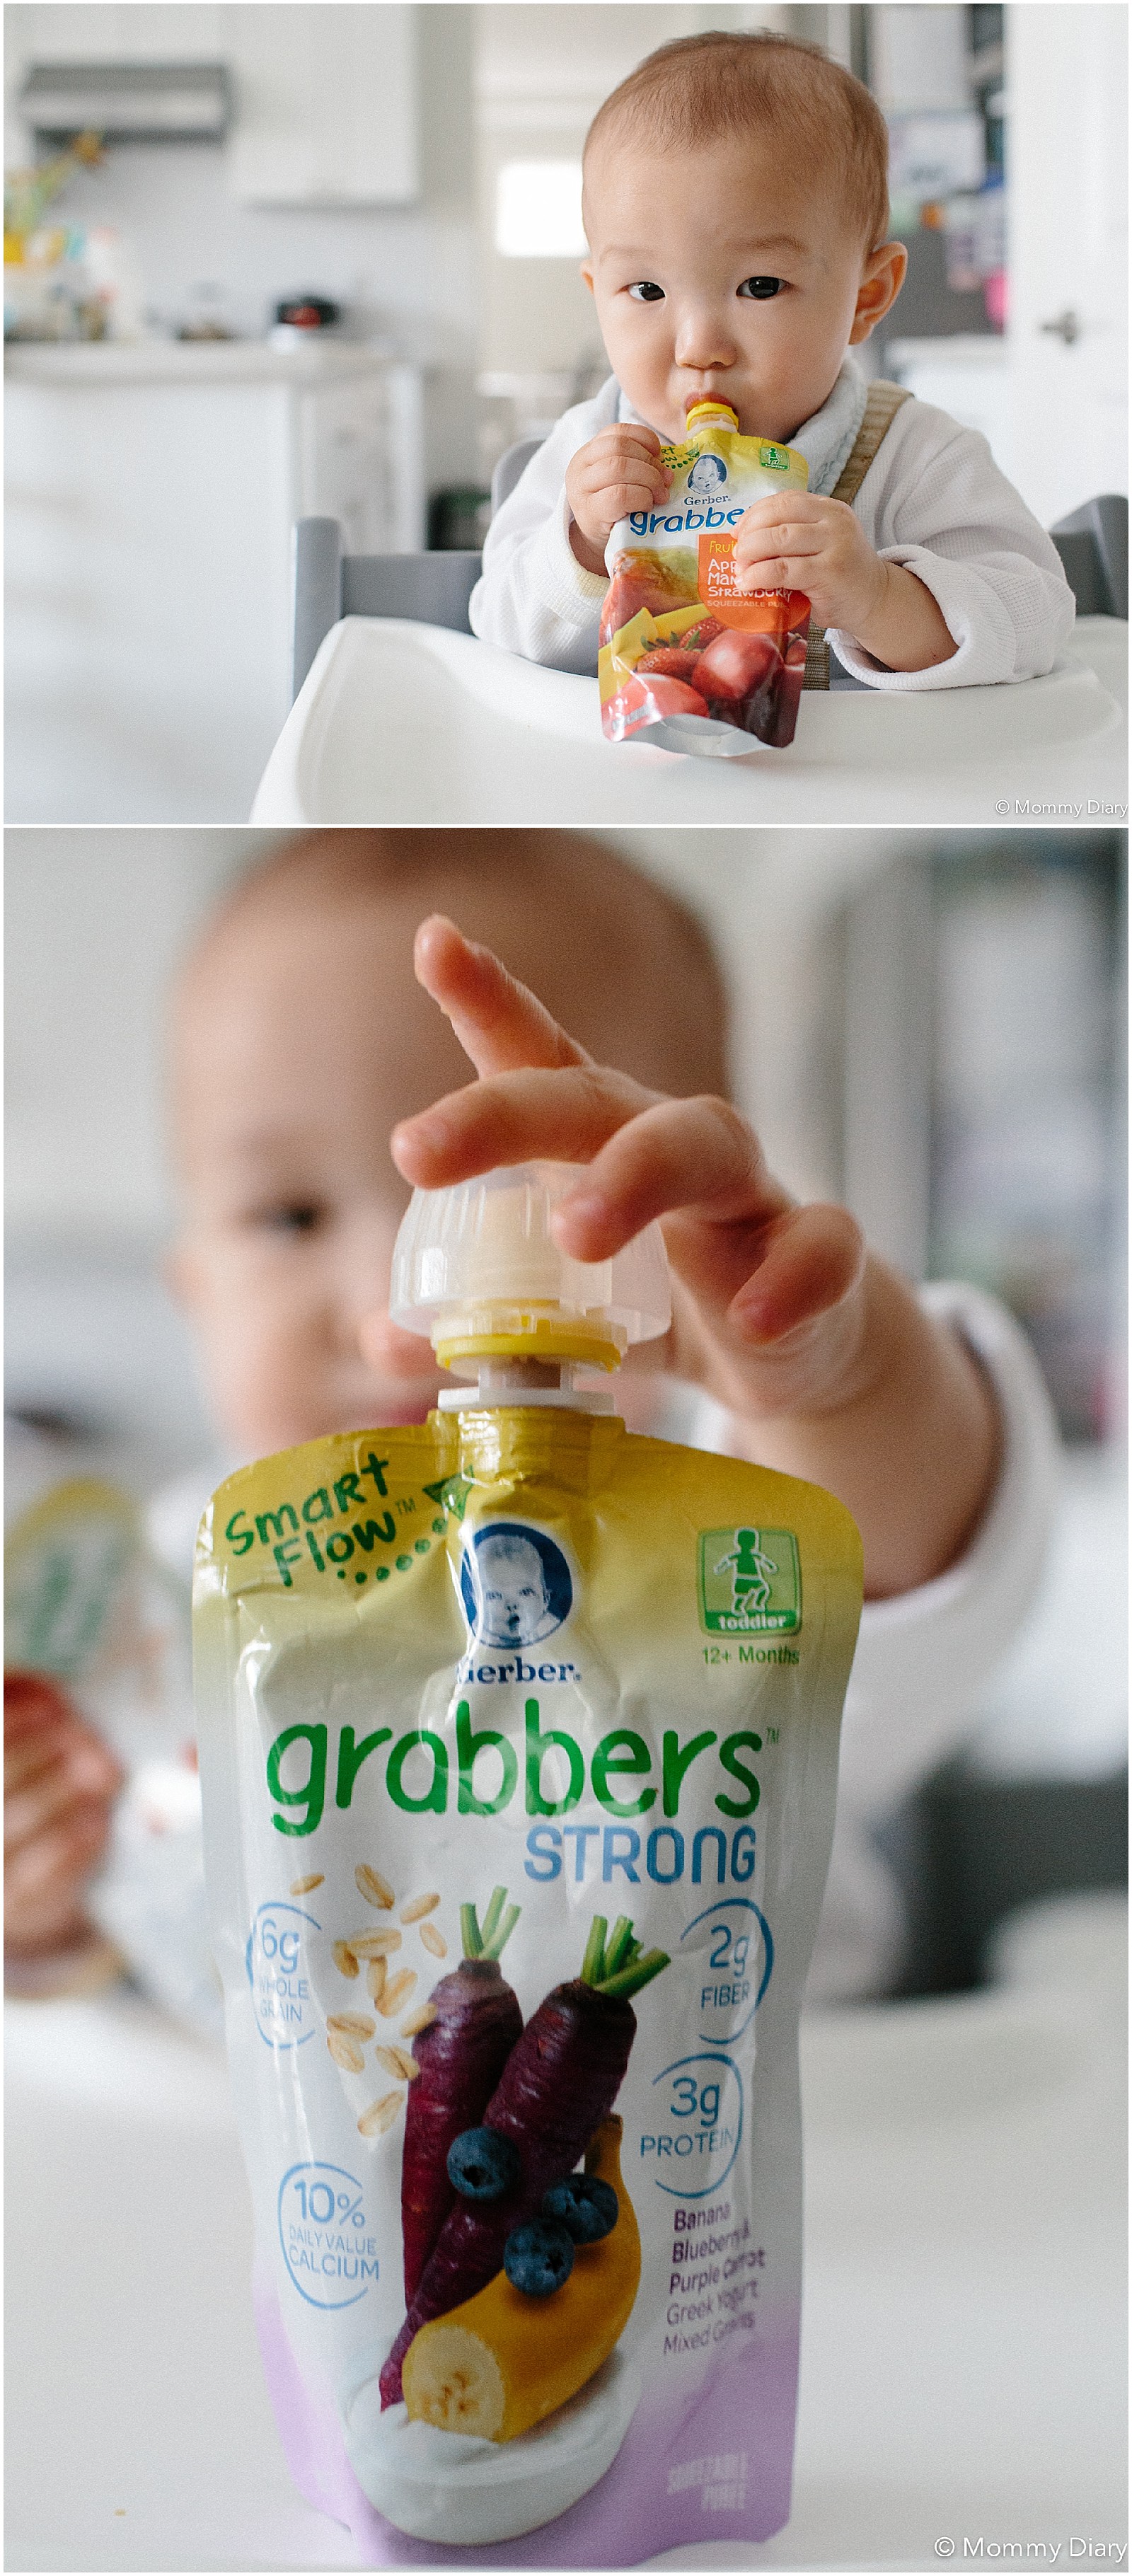 gerber-baby-food-smart-flow-grabbers